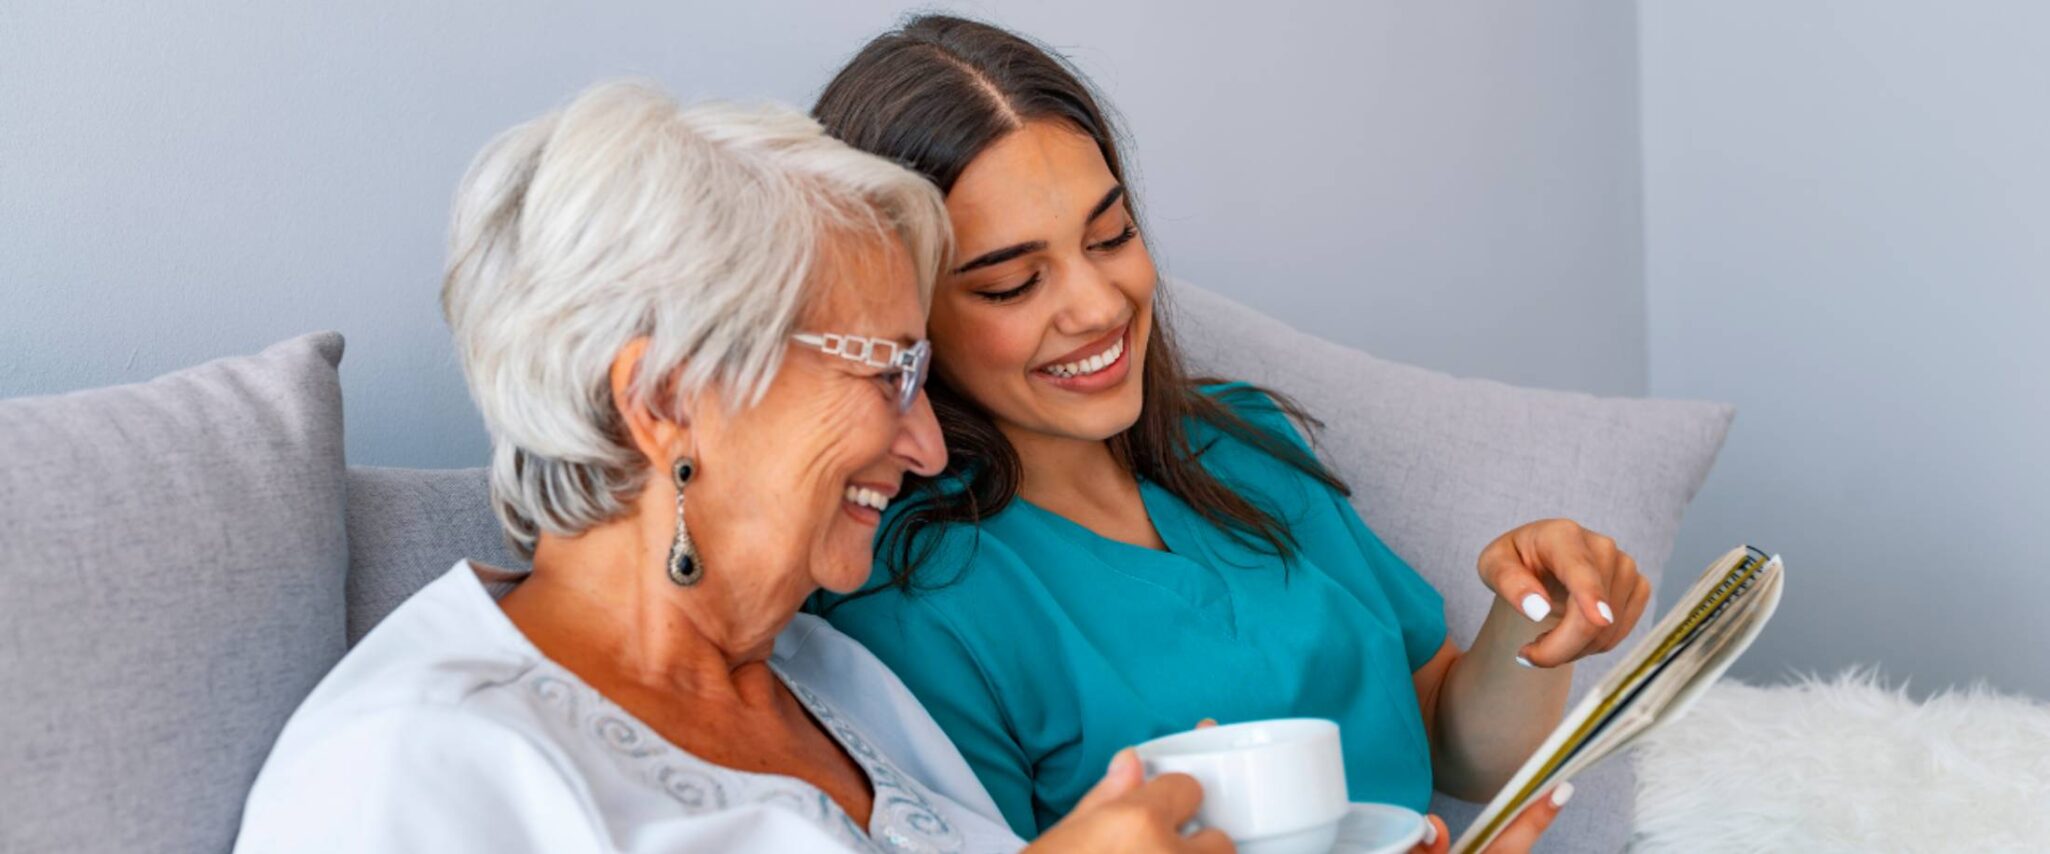 A caregiver shows something to a smiling senior female